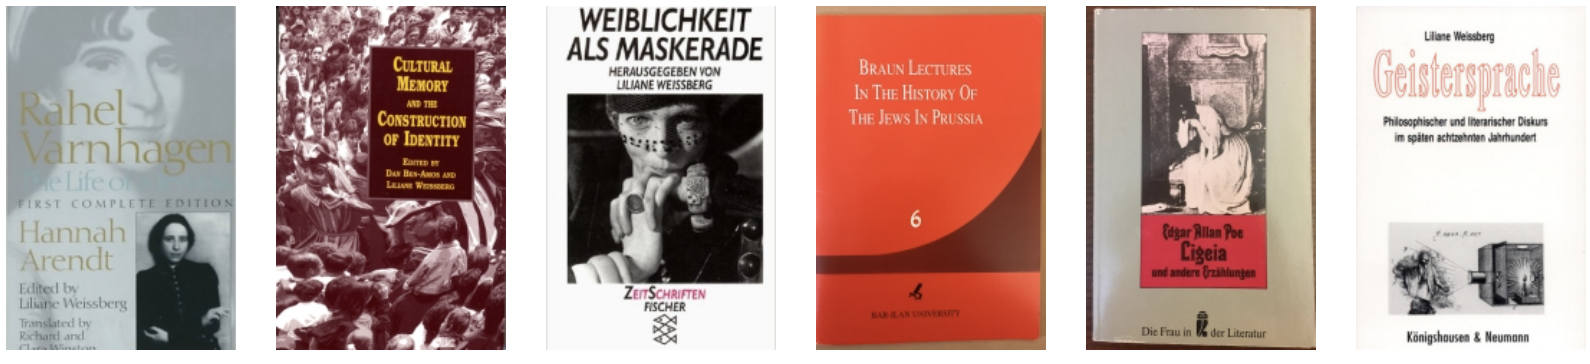 Weissberg books 3